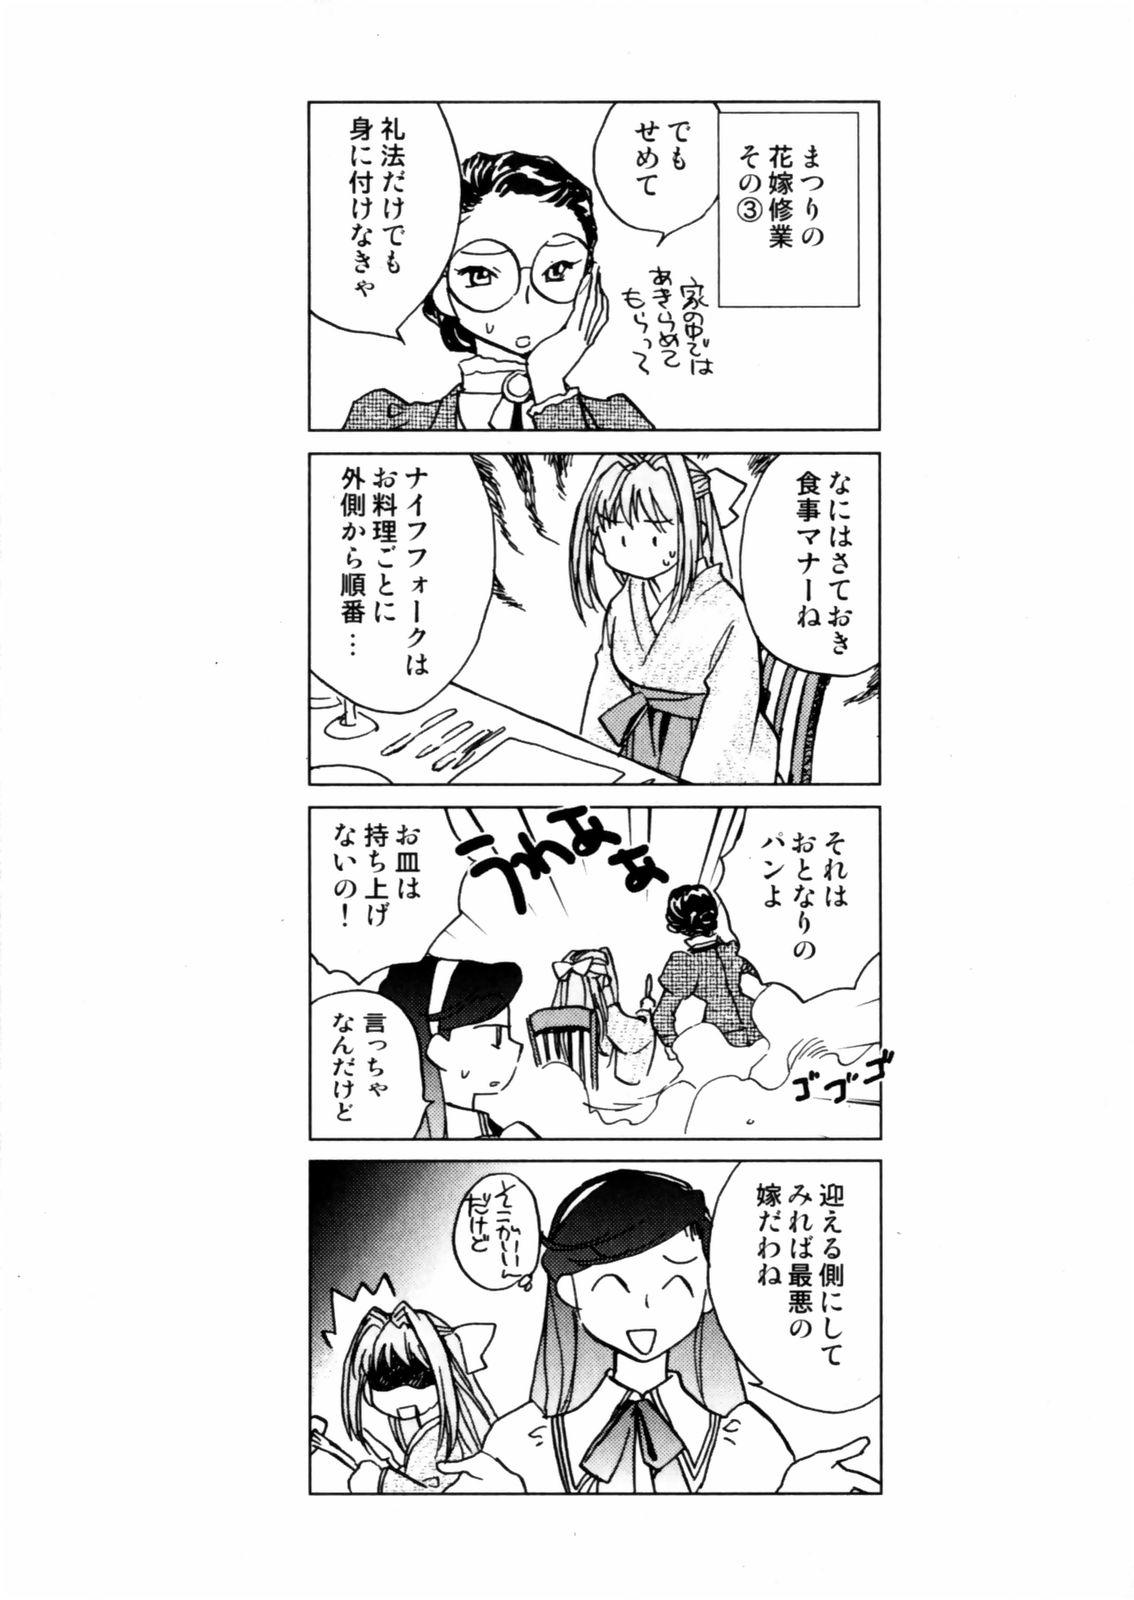 [Okano Ahiru] Hanasake ! Otome Juku (Otome Private Tutoring School) Vol.2 110